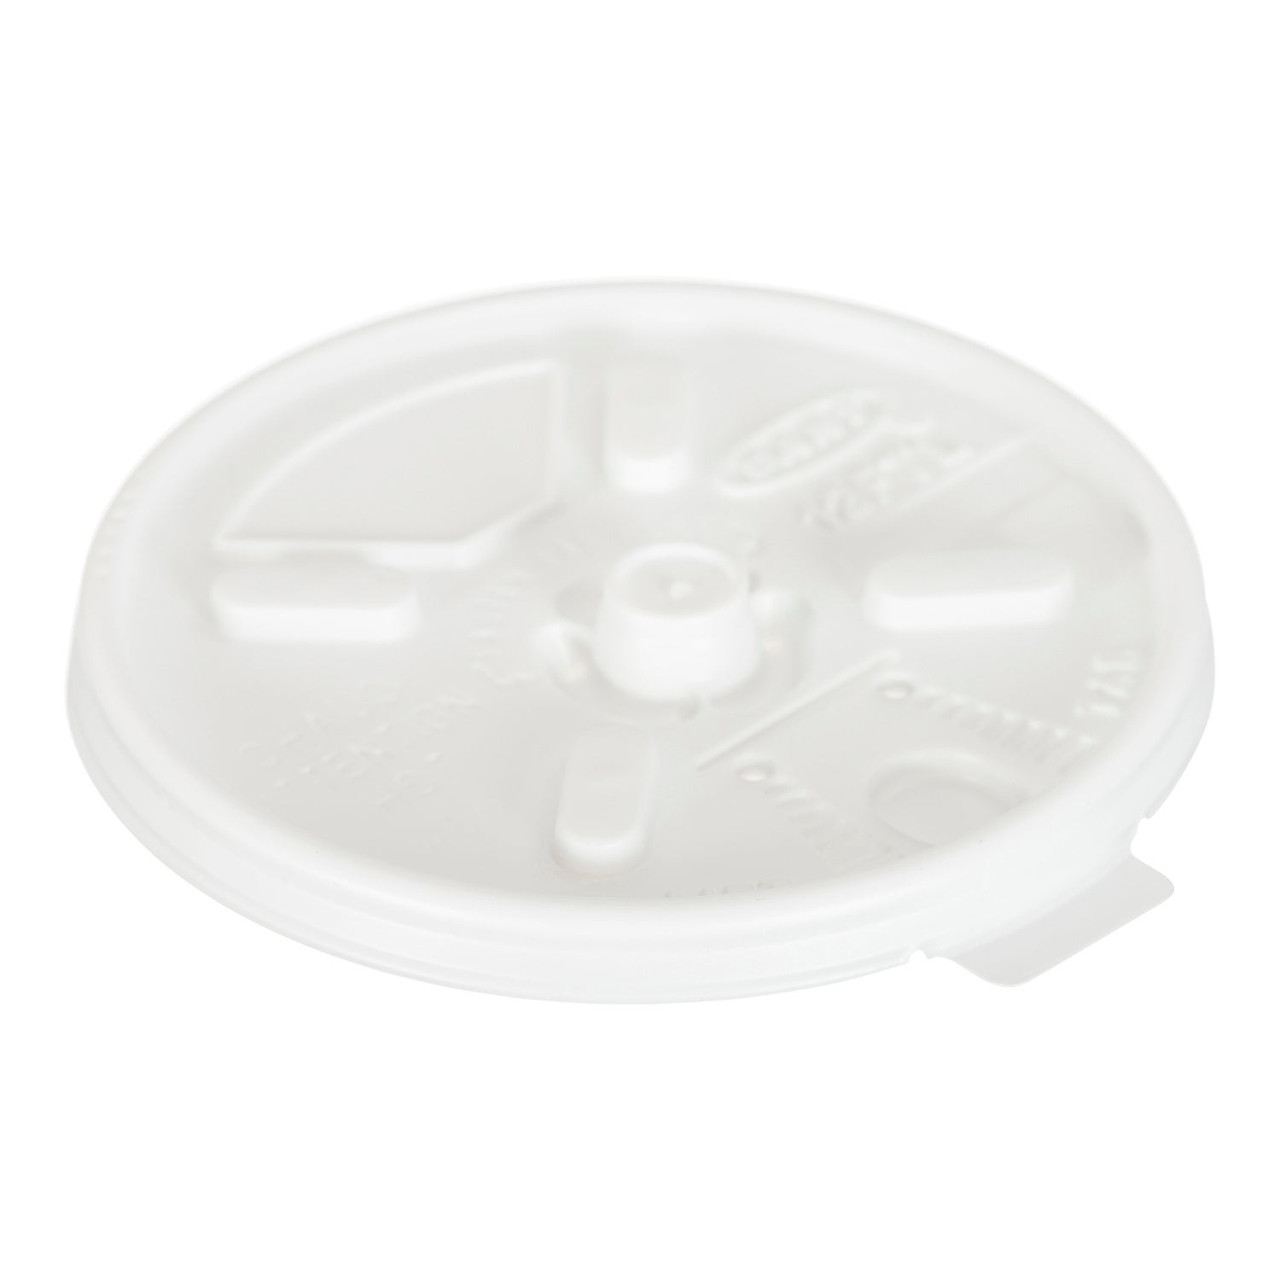 Gordon Choice White Plastic Flat Lids, For 10-16oz Cup, With Lift Lock | 100UN/Unit, 10 Units/Case